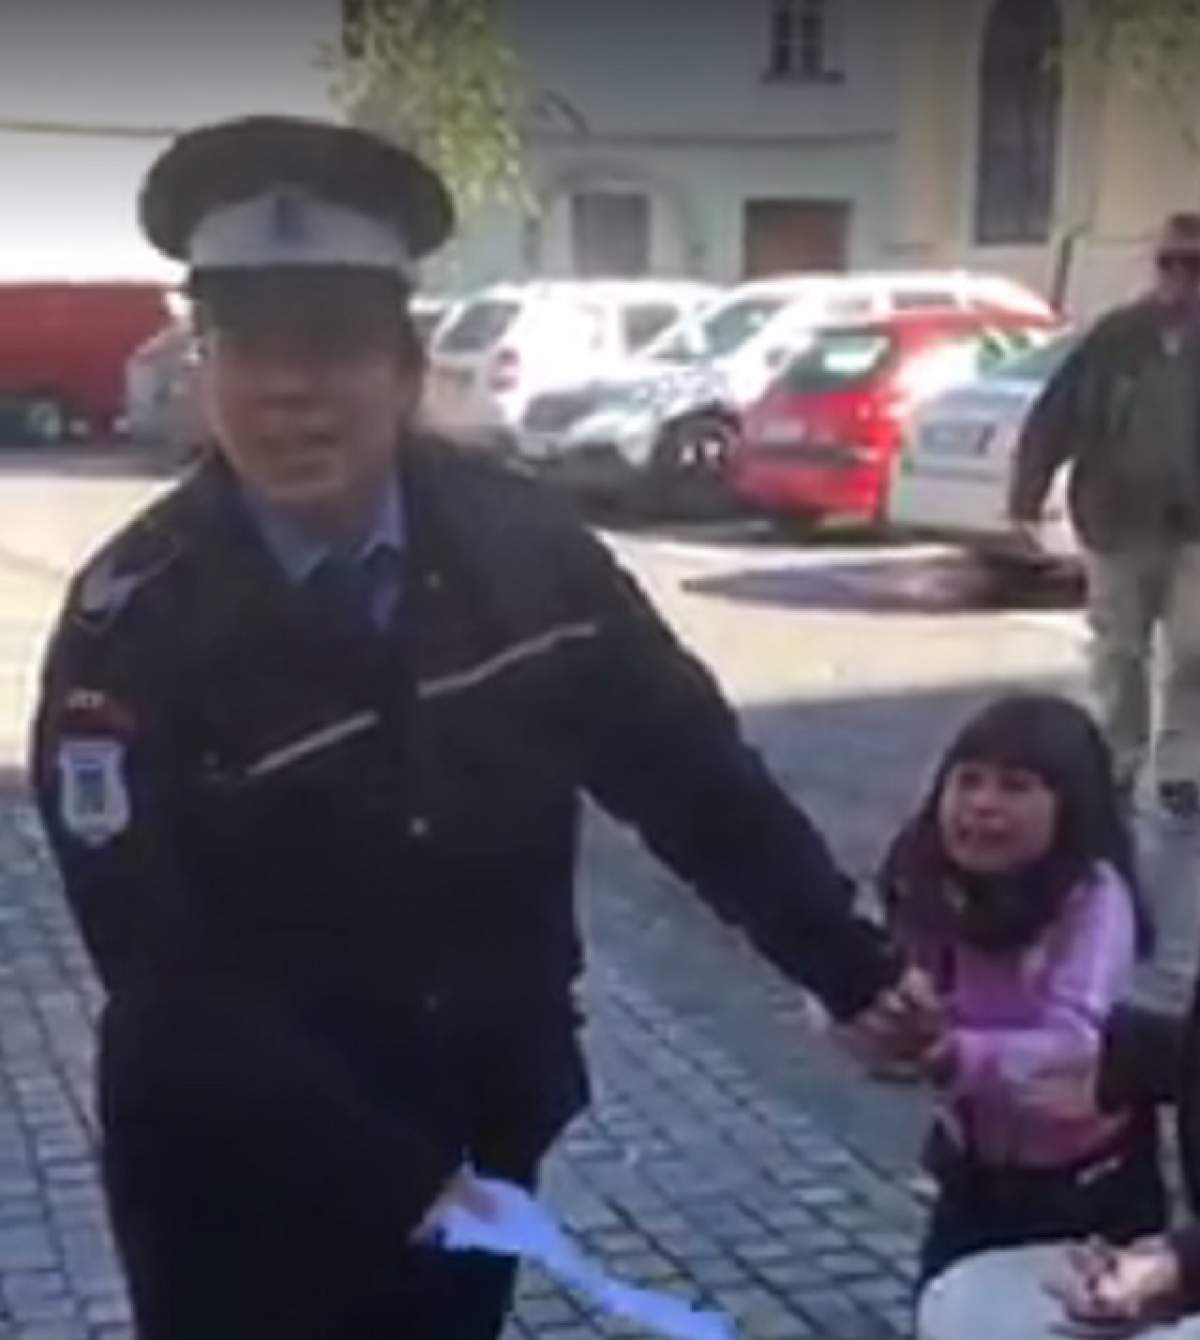 VIDEO viral / Imagini şocante. O poliţistă agresează o fetiţă în plină stradă